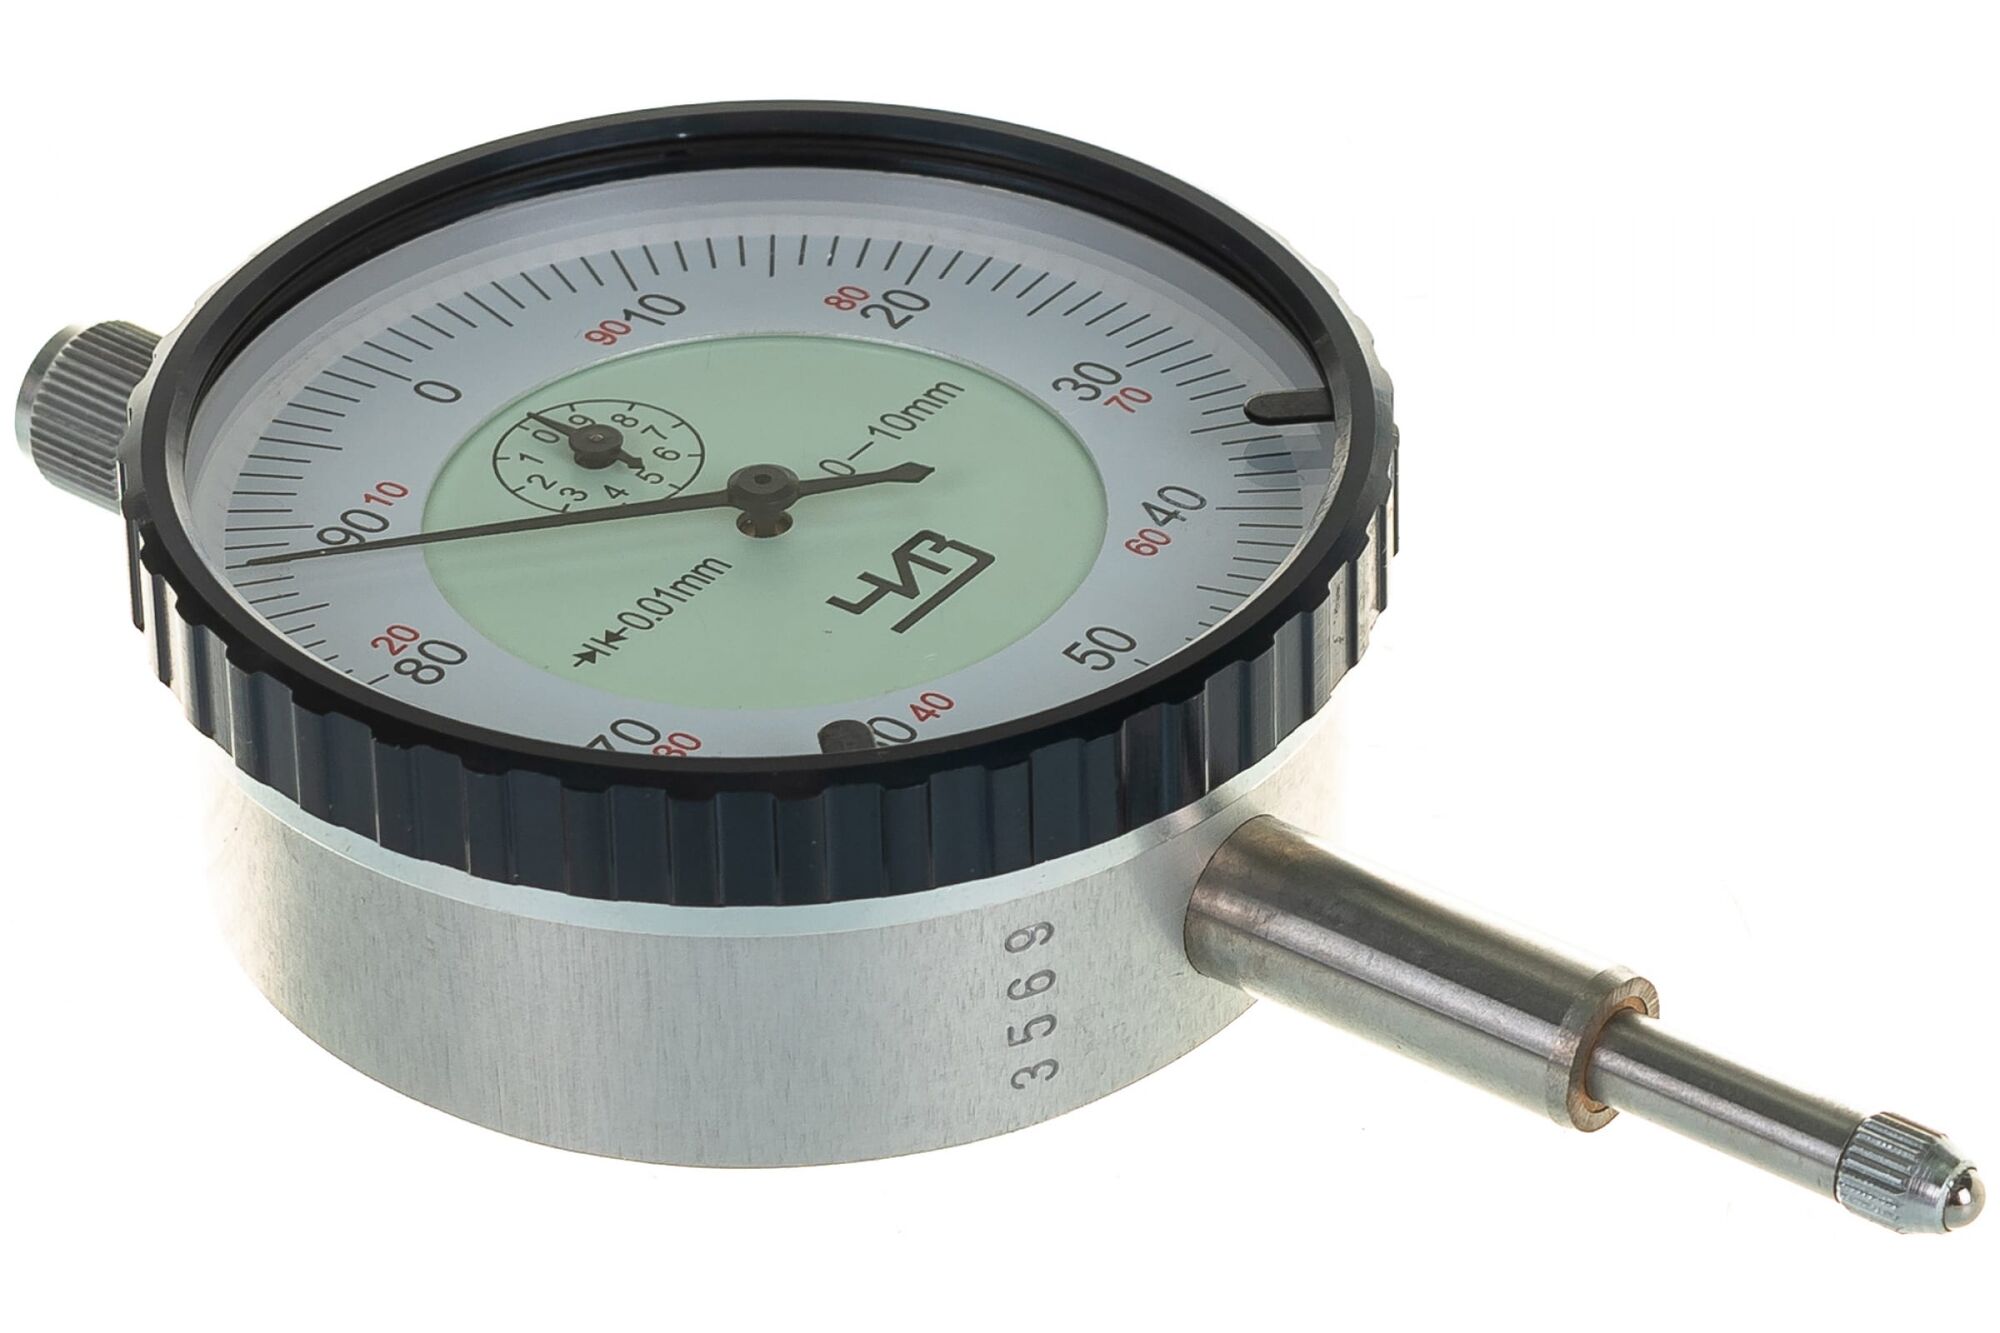 Индикатор часового типа (0-10 мм, 0.01 мм, без ушка) ЧИЗ 45733